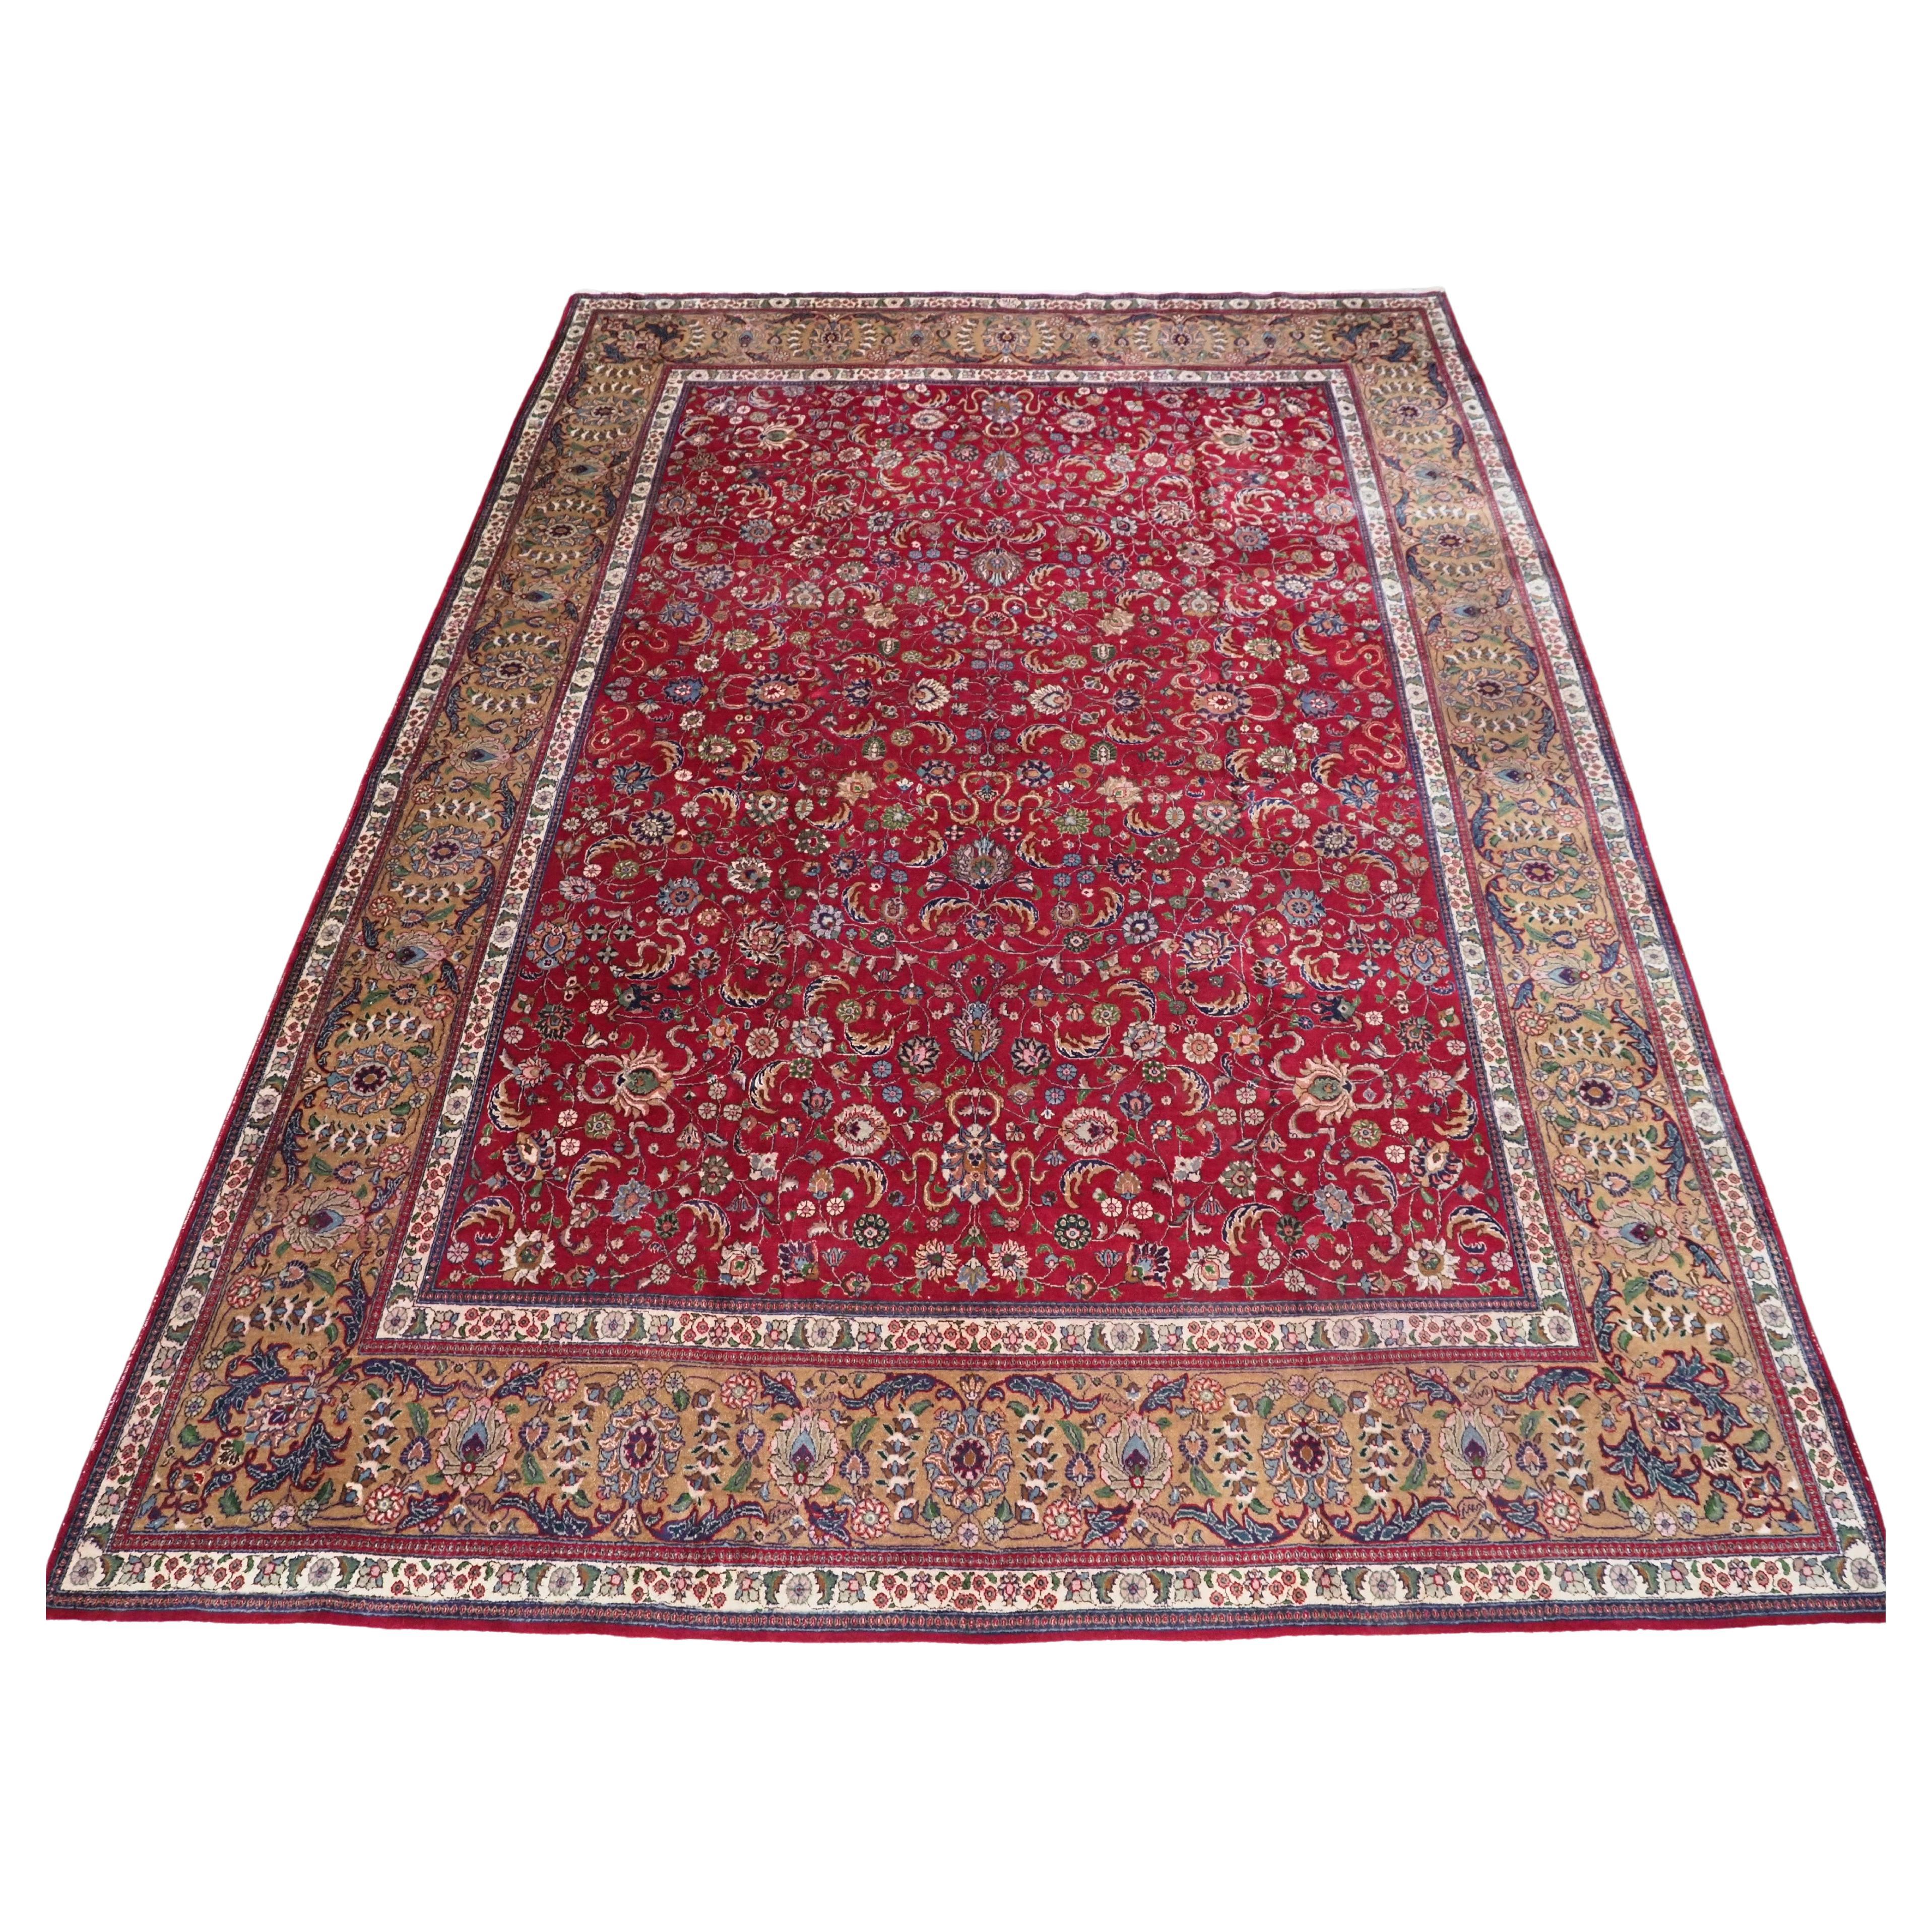 Vintage Tabriz carpet of traditional all over design in large room size.